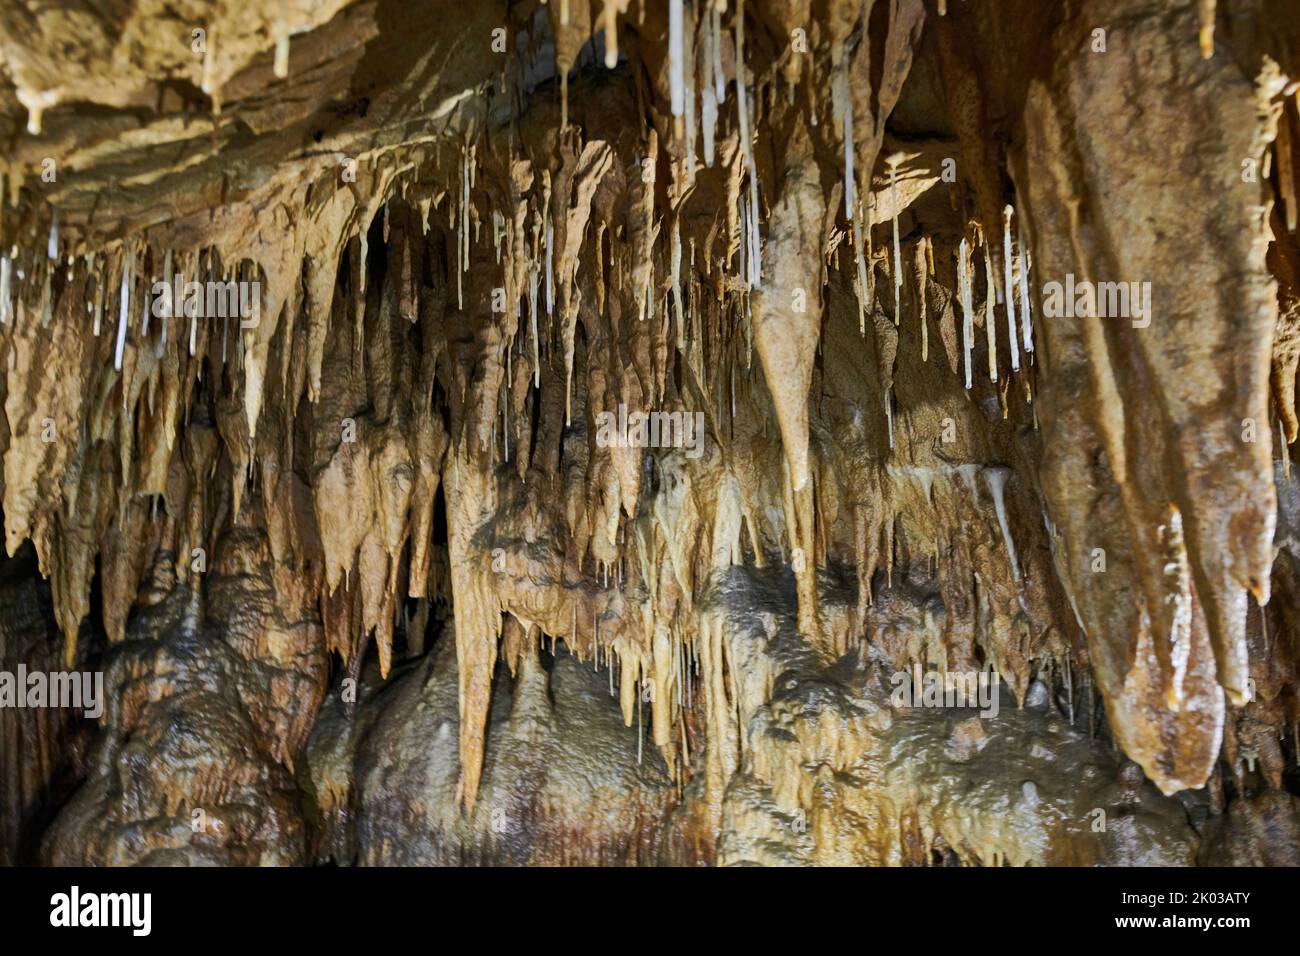 Dripstone cave, Grotte du Château de la Roche Stock Photo